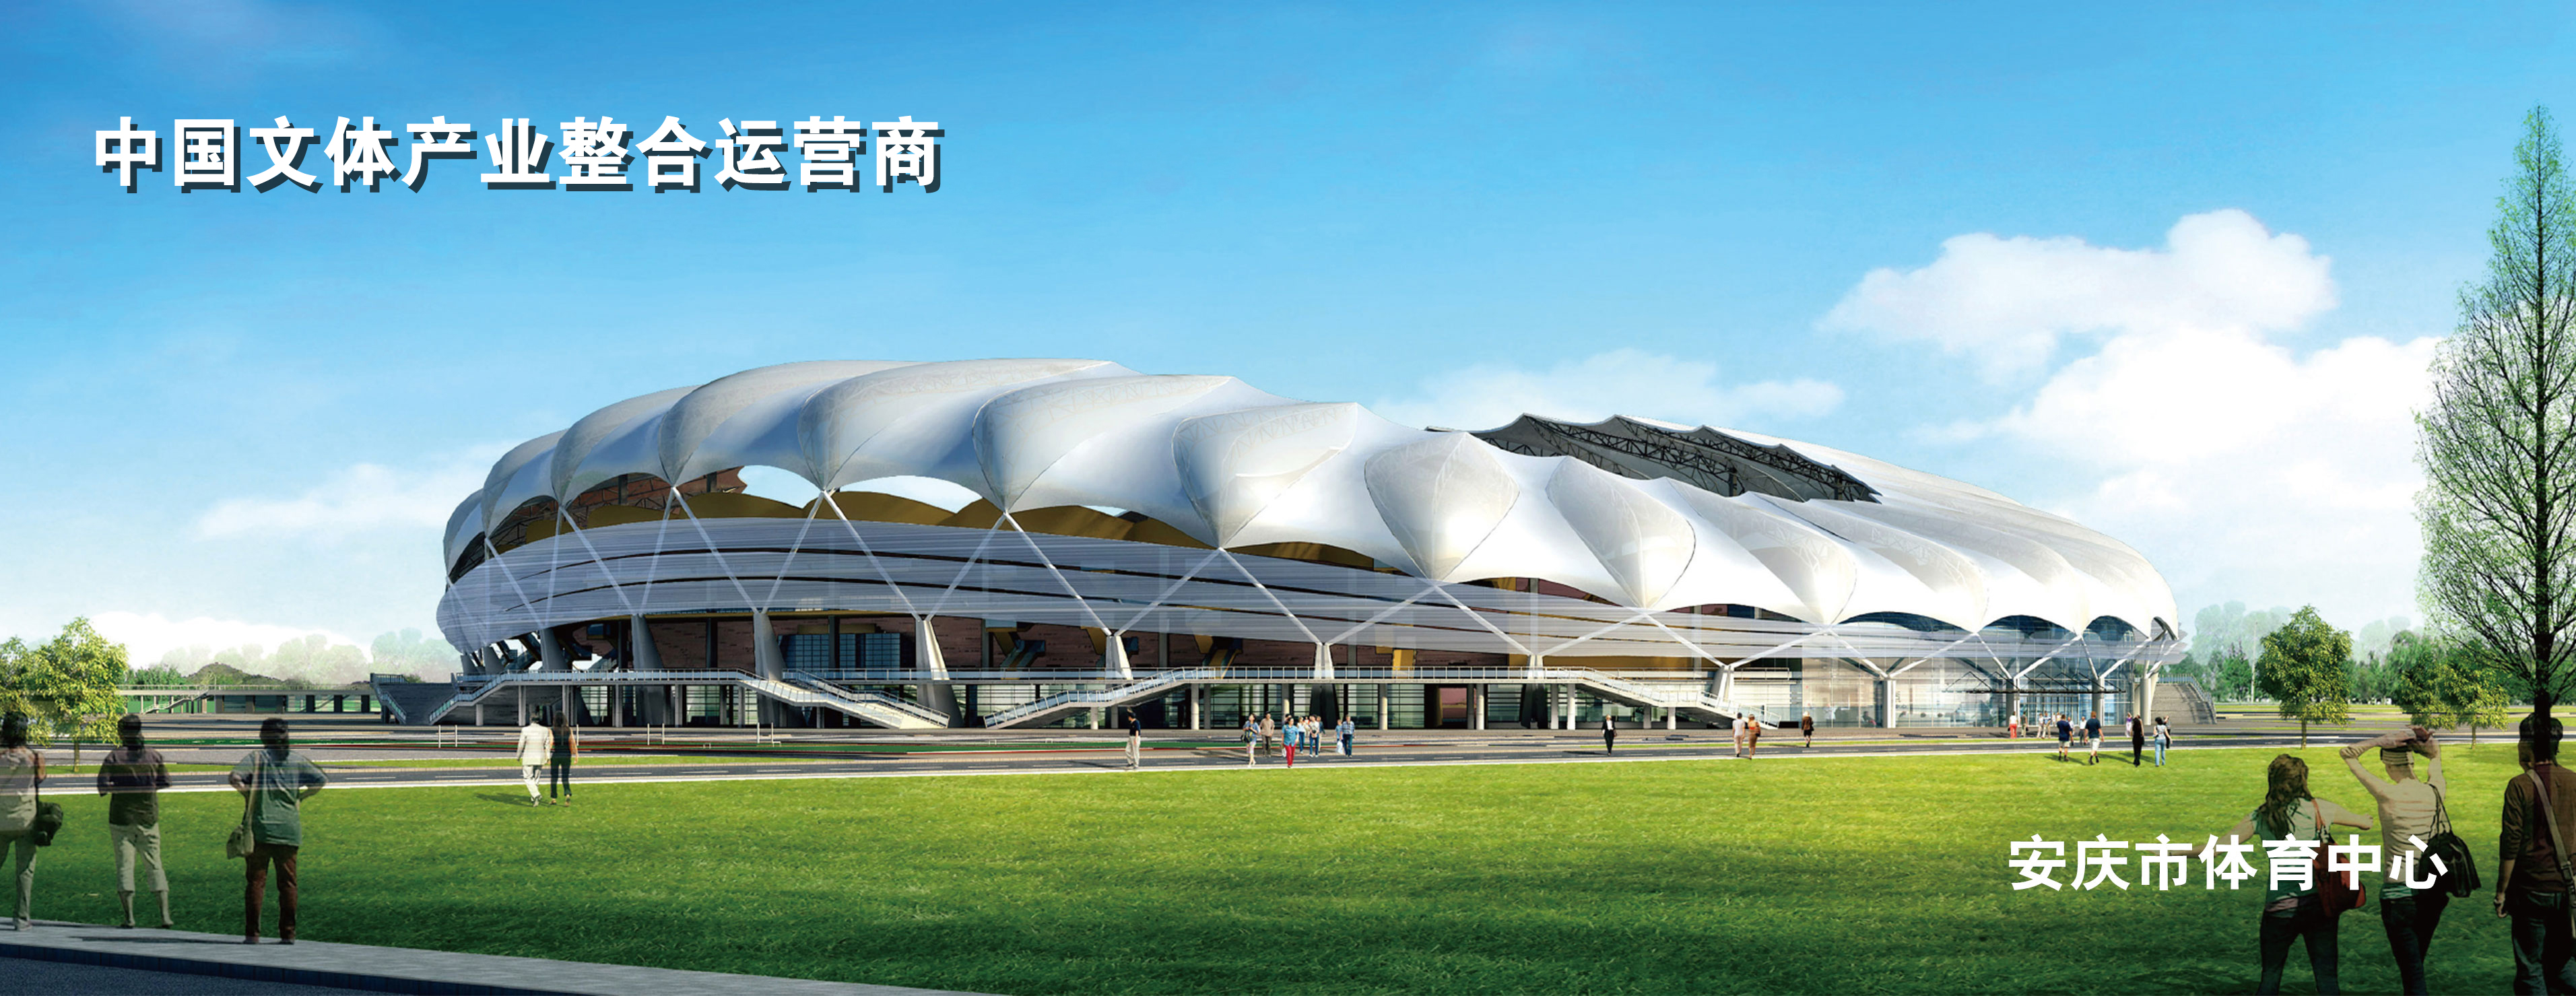 安庆市体育中心